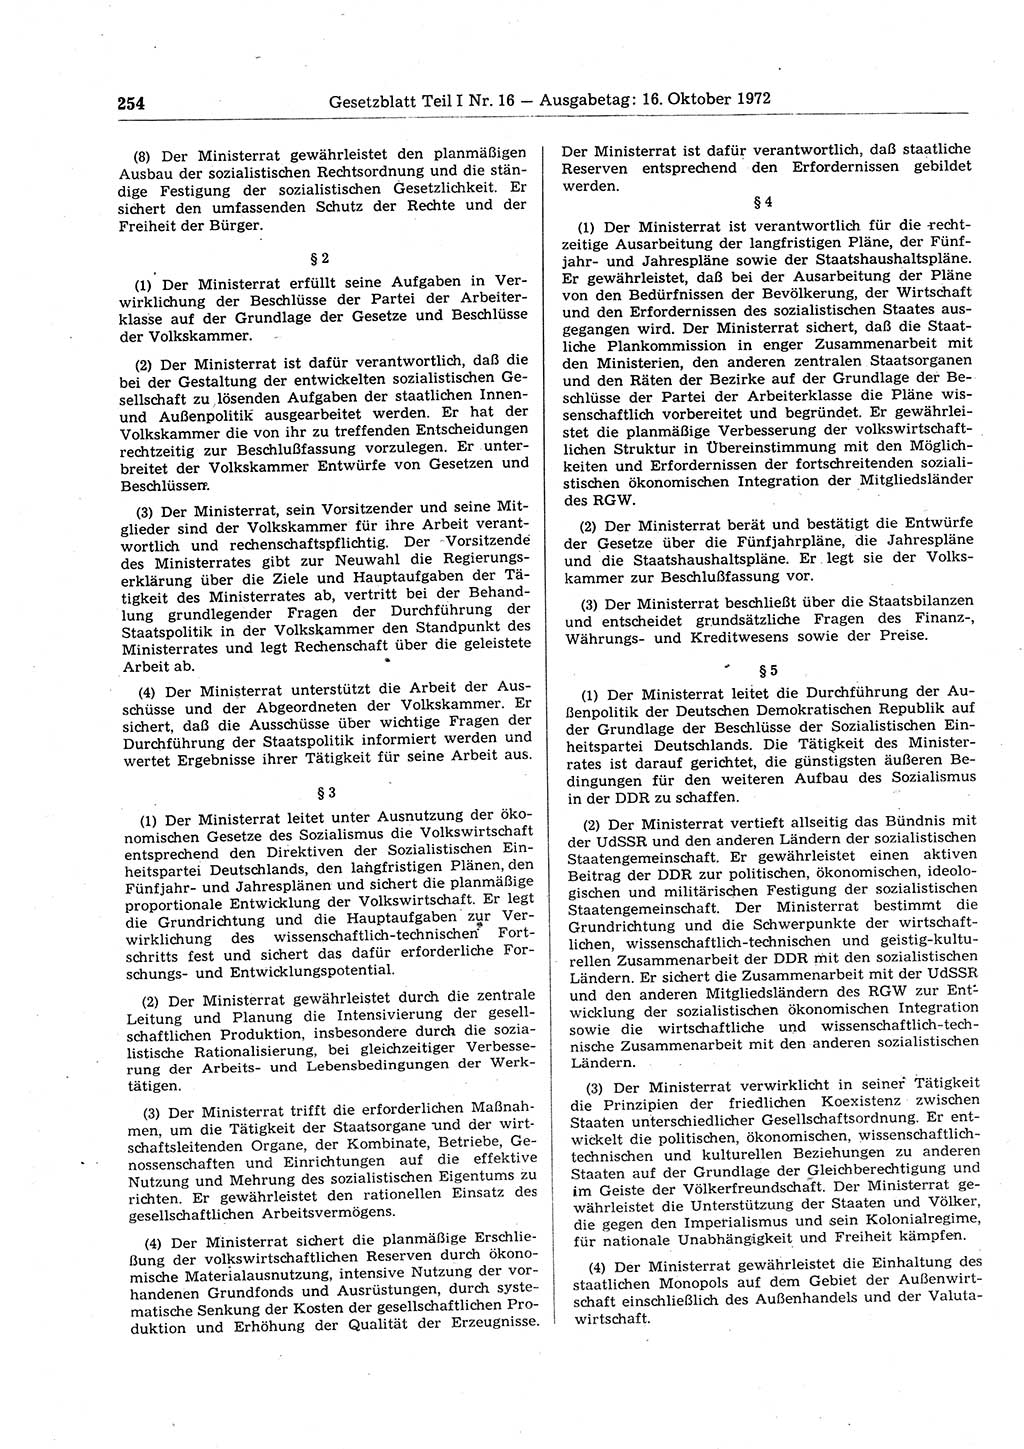 Gesetzblatt (GBl.) der Deutschen Demokratischen Republik (DDR) Teil Ⅰ 1972, Seite 254 (GBl. DDR Ⅰ 1972, S. 254)